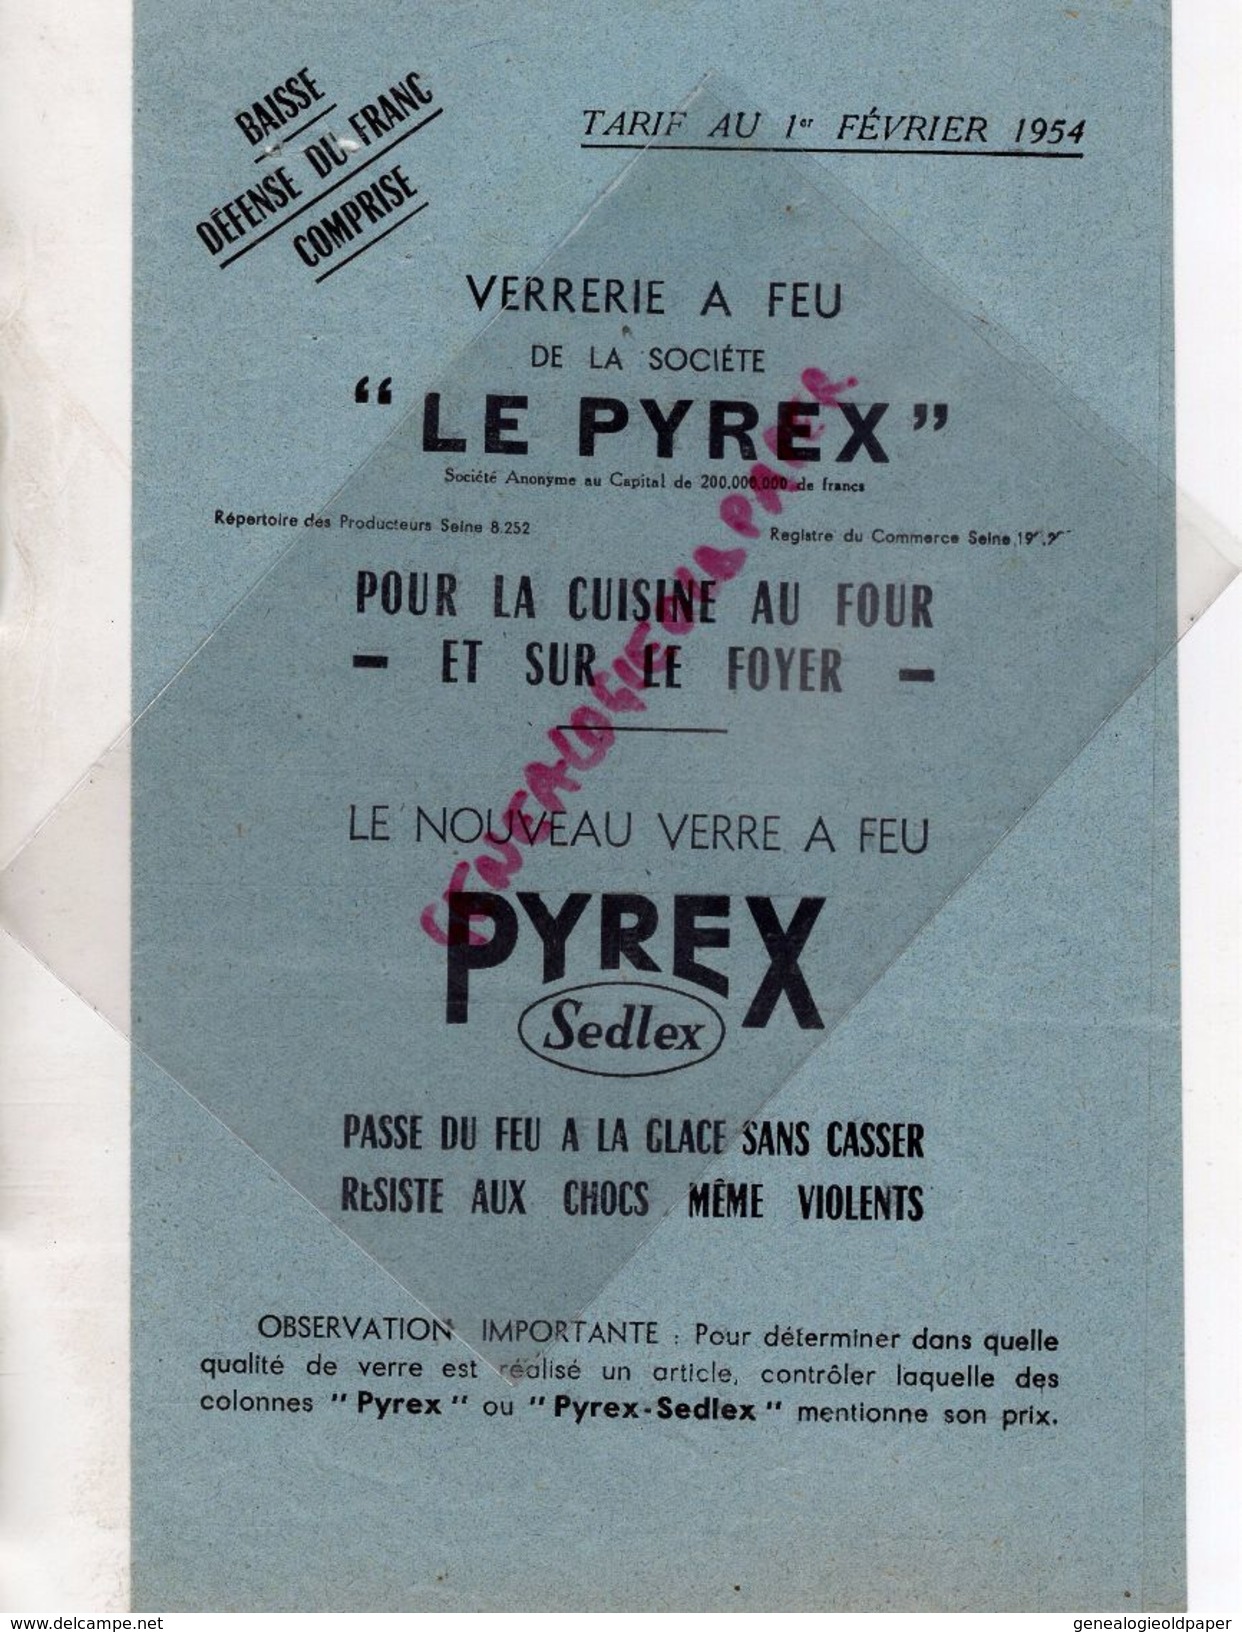 PUBLICITE  PYREX-VERRE A FEU PYREX SEDLEX-19 RUE MICHODIERE PARIS- COMPTOIR METALLURGIQUE J. PINGUSSON CLERMONT FERRAND - Publicités